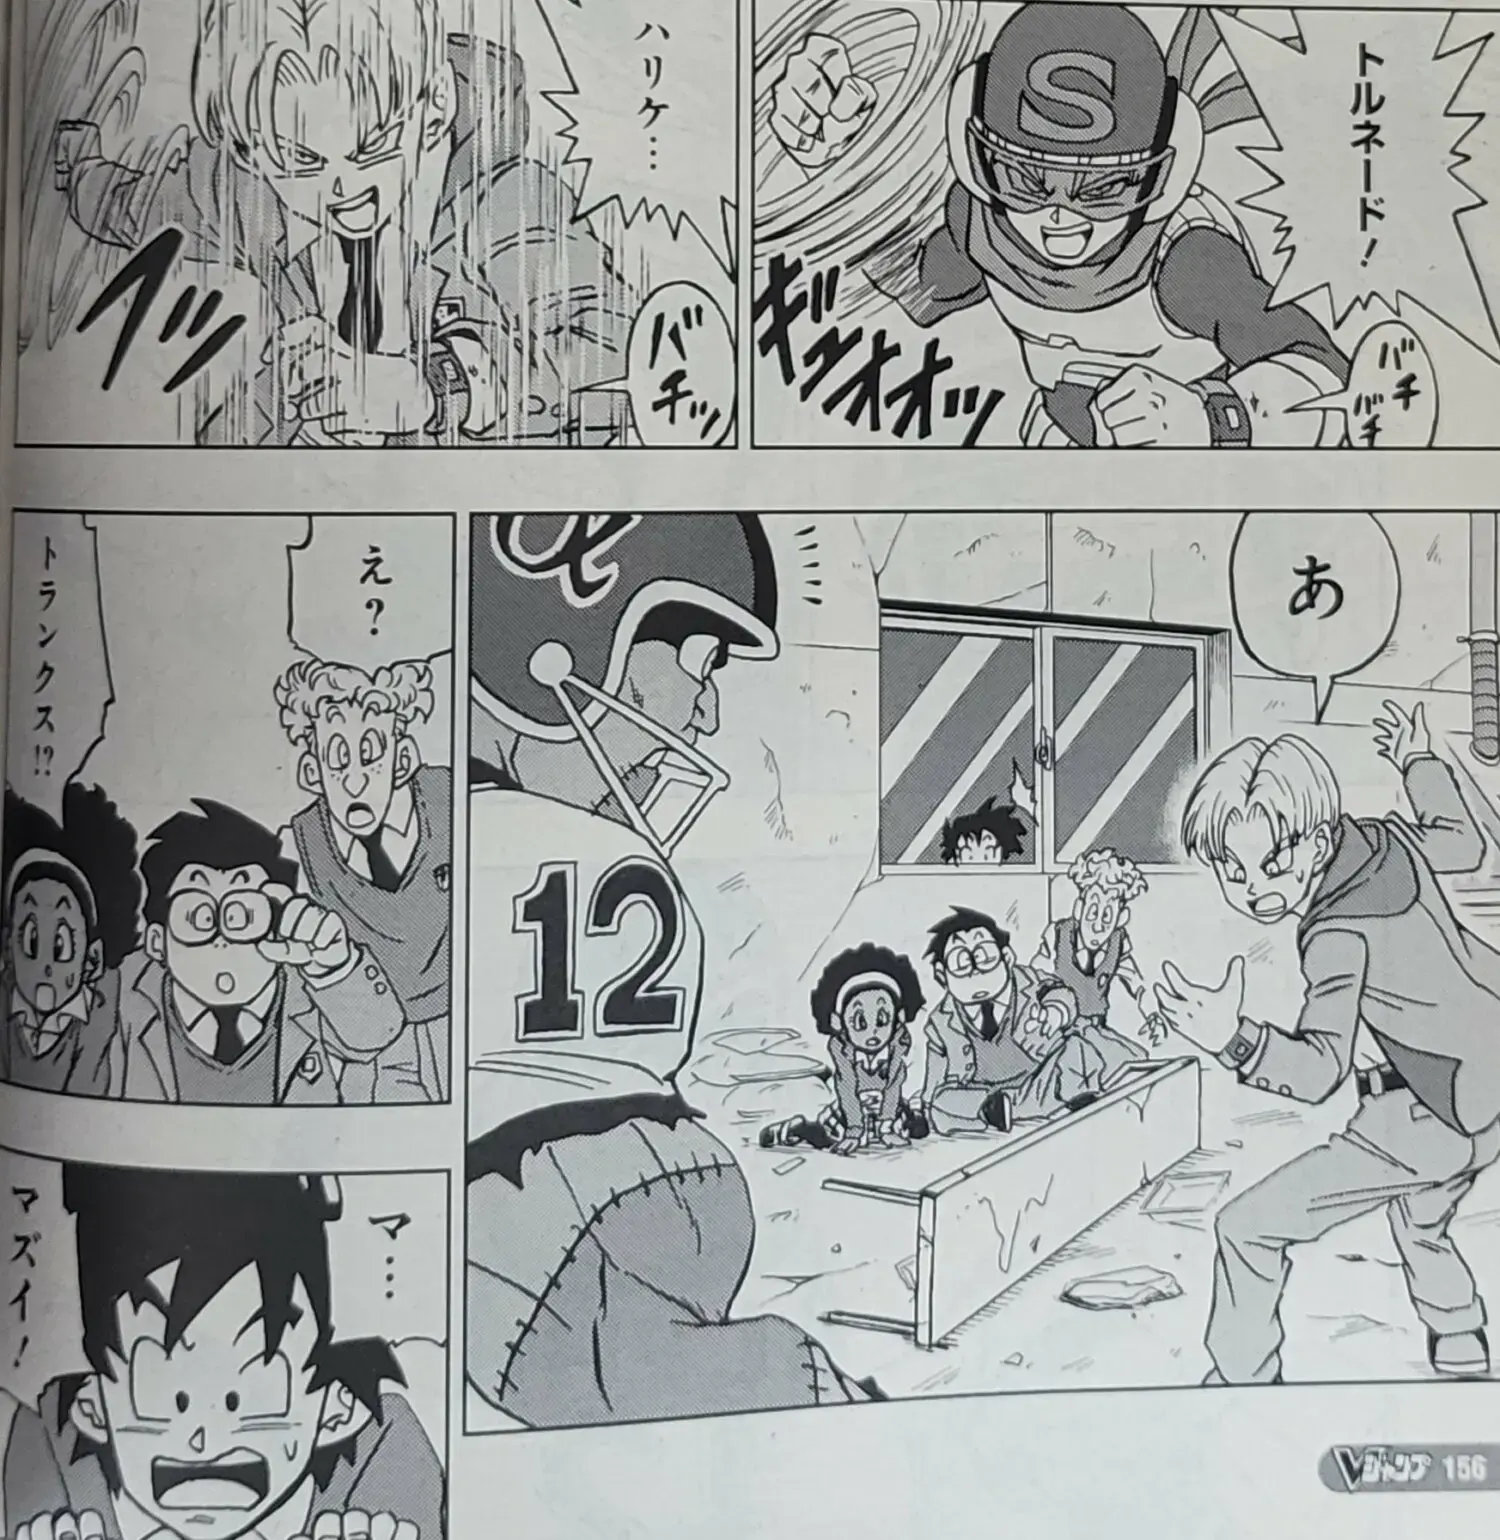 Dragon Ball Super chapitre 88 du manga a été dévoilé avec des images et un résumé ; Goten et Trunks sont des super-héros. 7 4